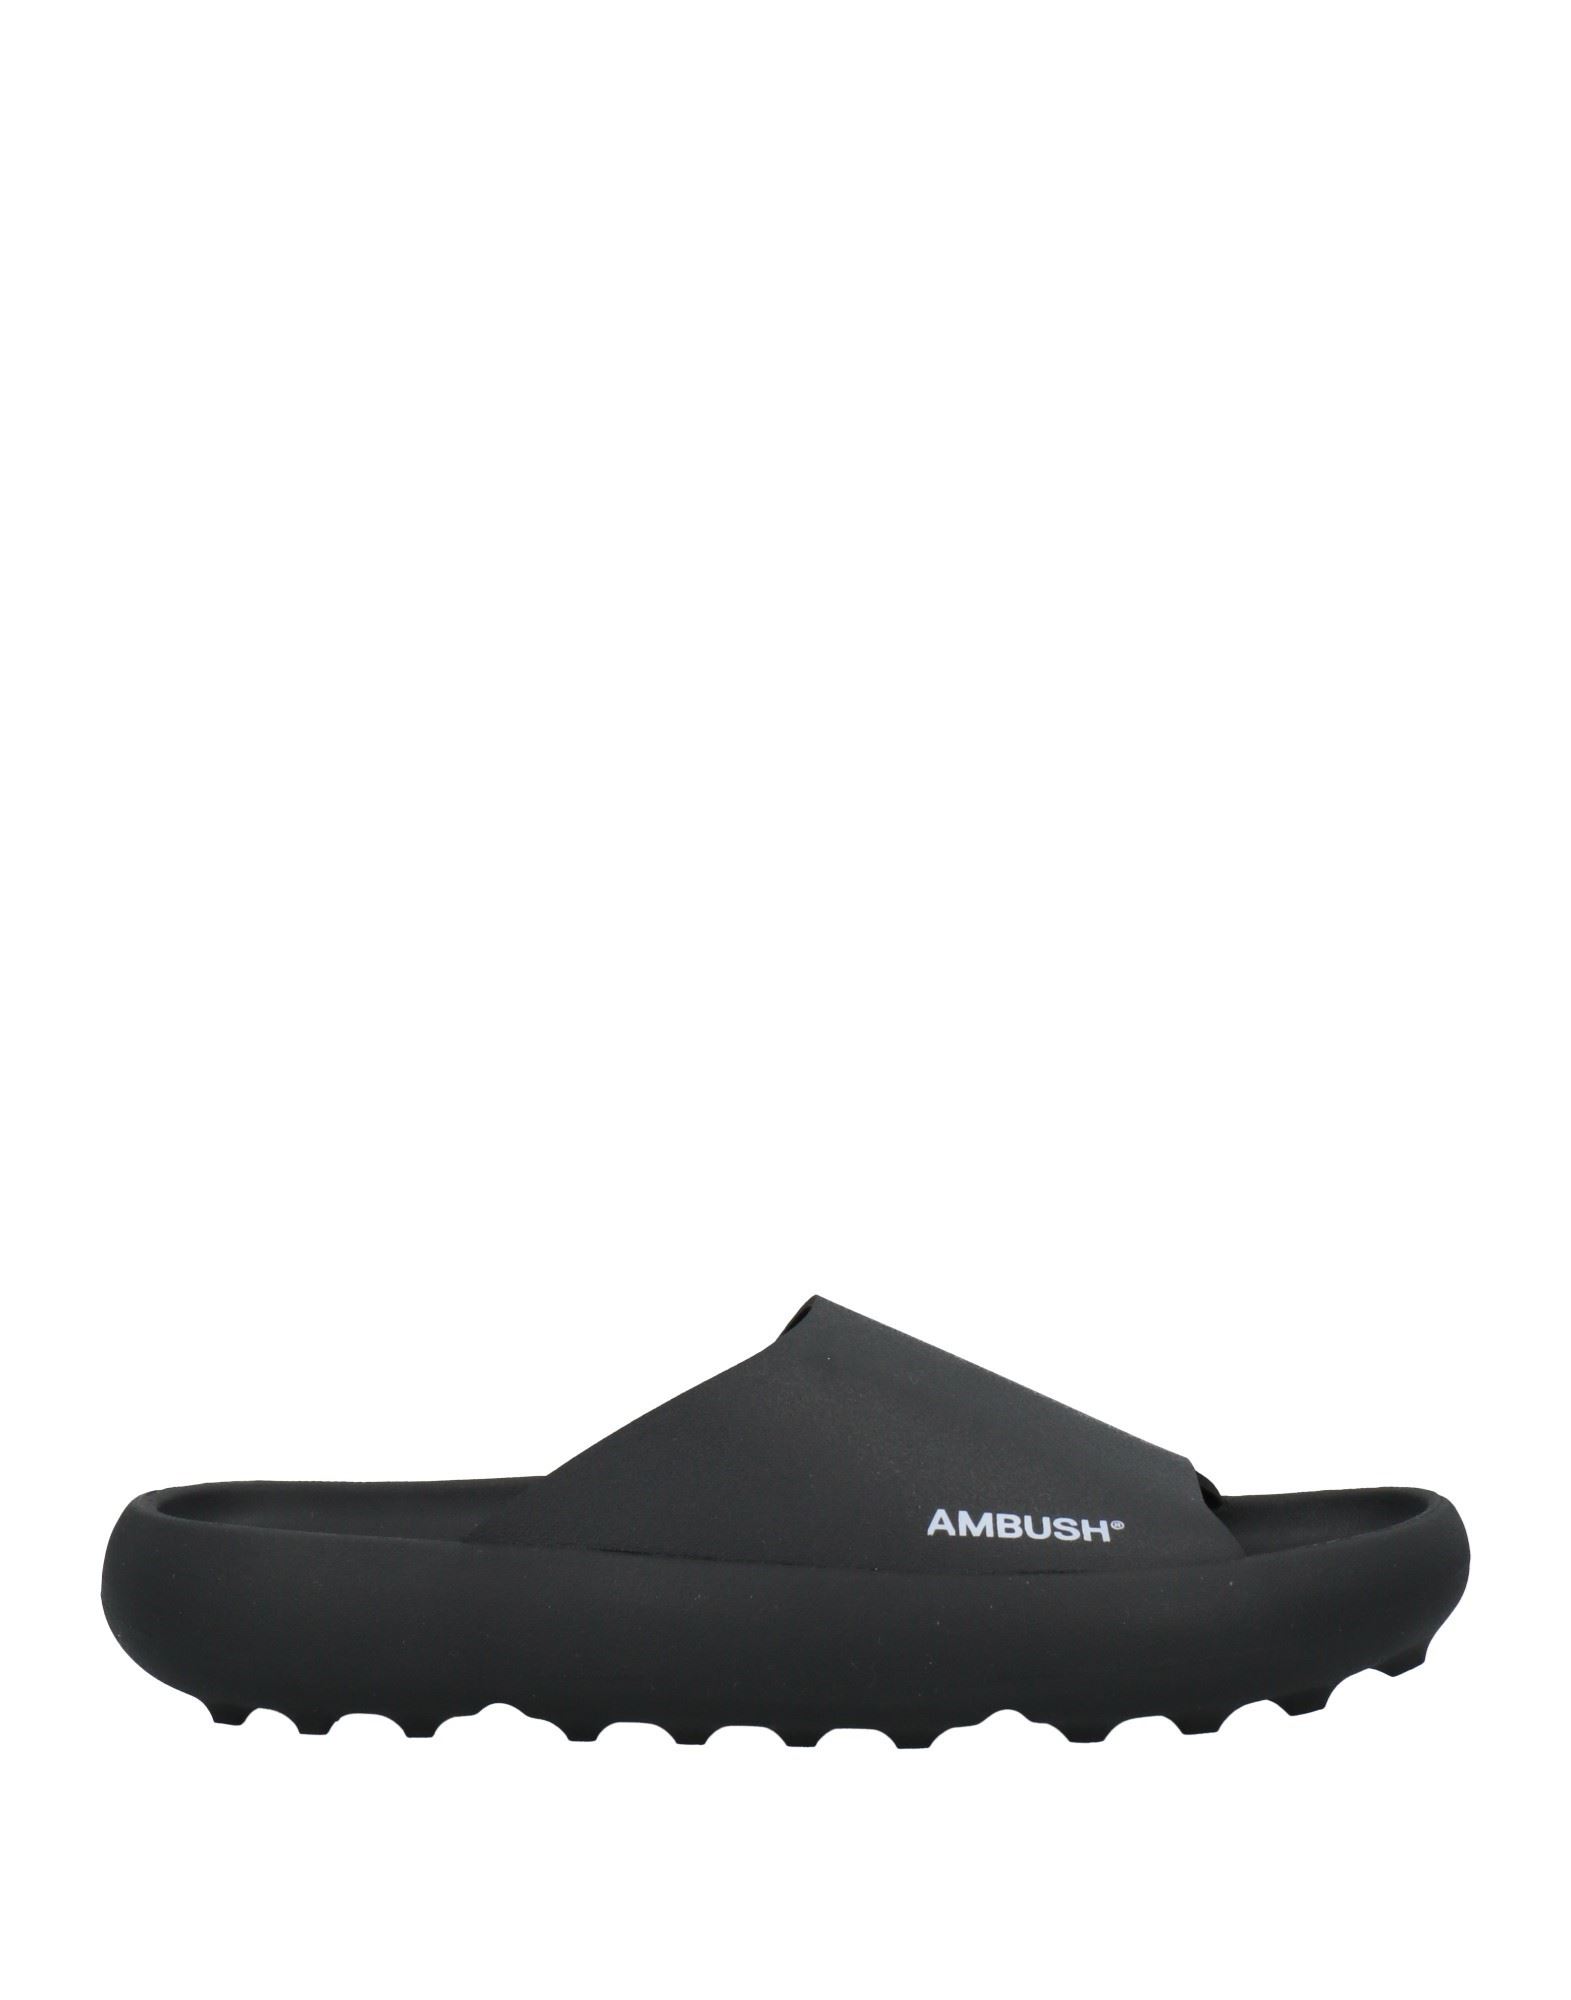 Shop Ambush Man Sandals Black Size 9 Rubber